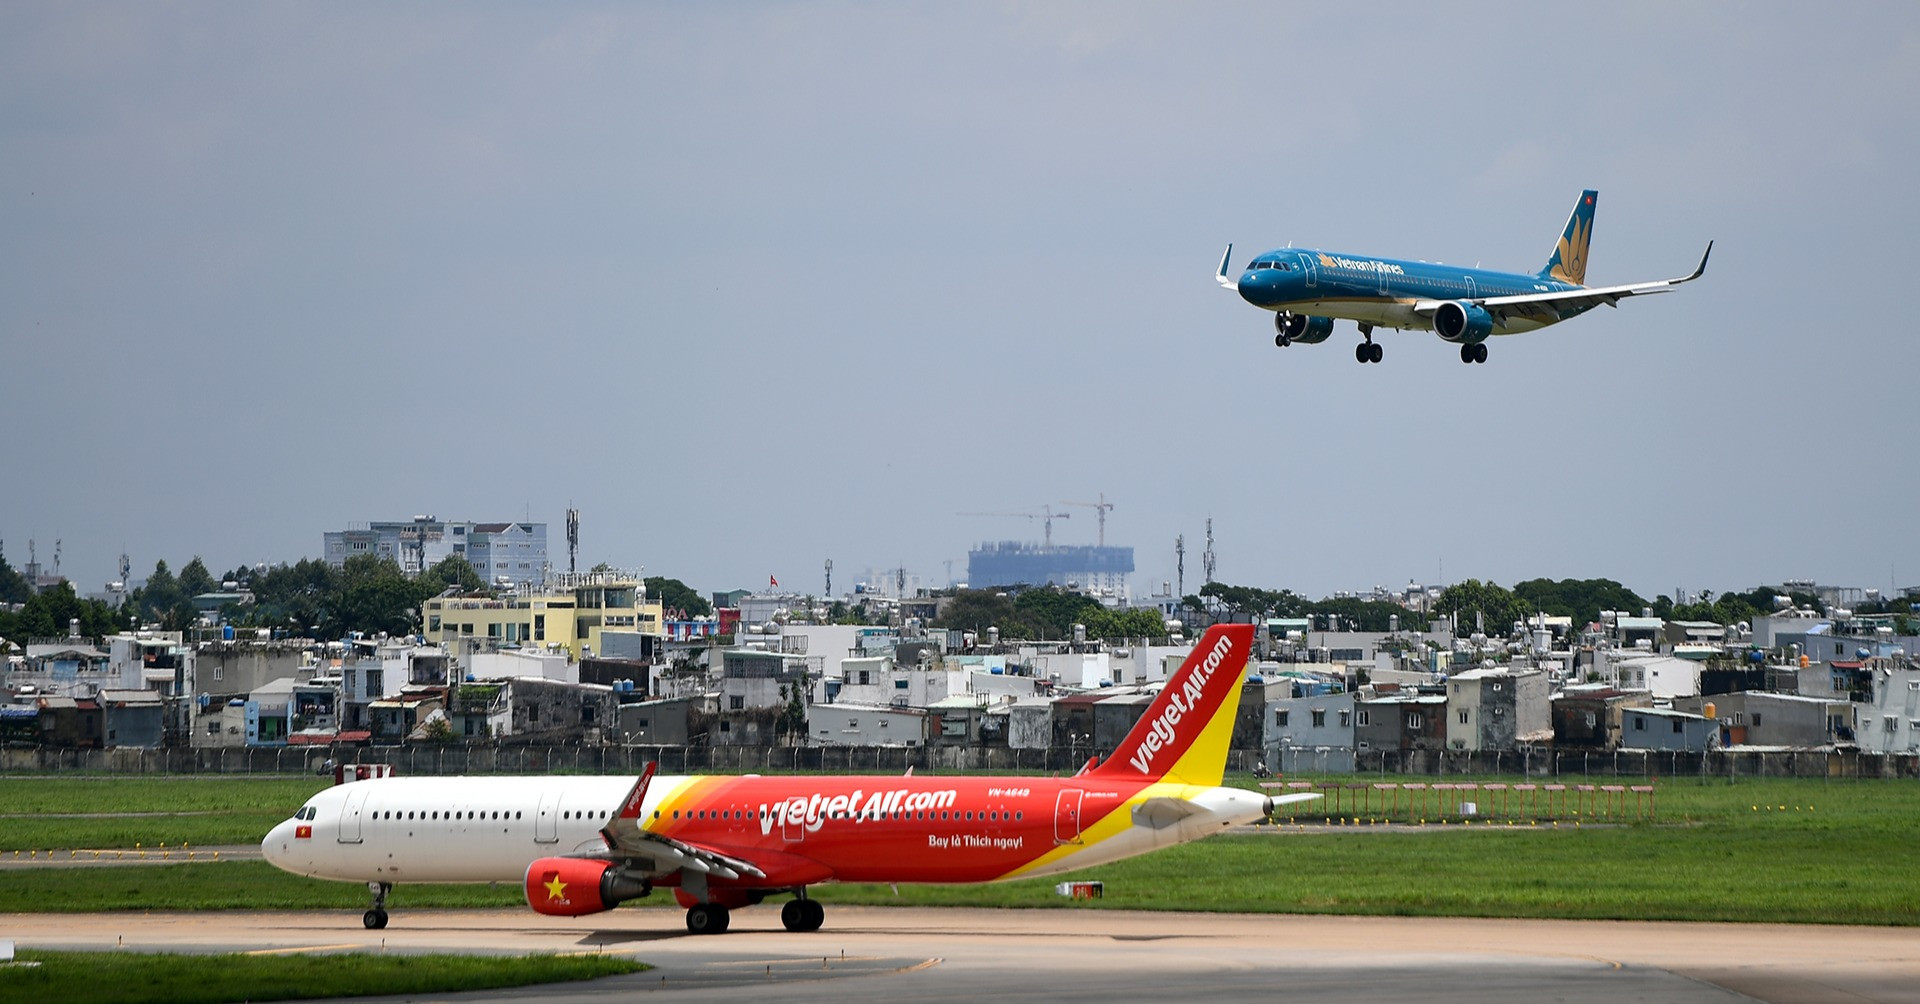 thời điểm trước dịch Covid-19 (năm 2019), thị trường hàng không Việt Nam - Trung Quốc có 14 hãng hàng không khai thác  - dsc-3781-1-918-1 - Lùi thời hạn nối lại đường bay đến Trung Quốc